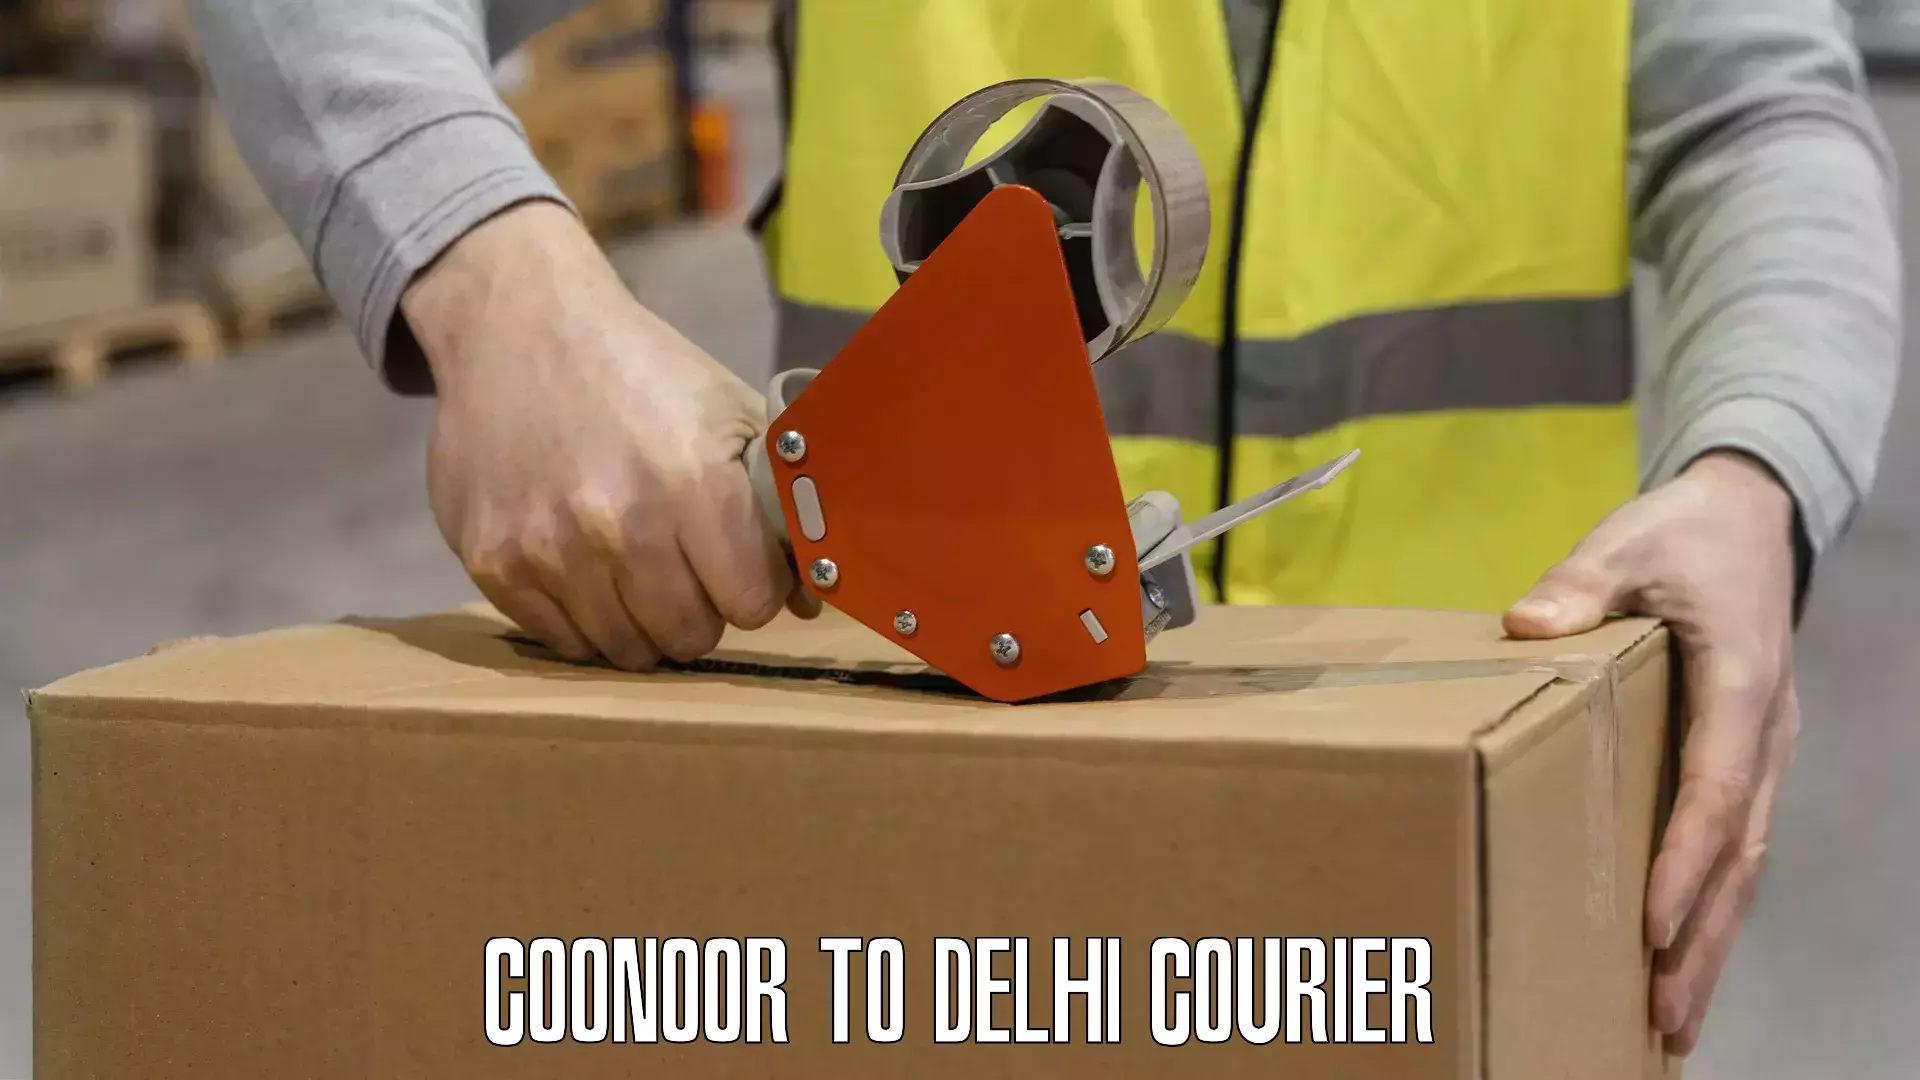 Bulk courier orders Coonoor to University of Delhi